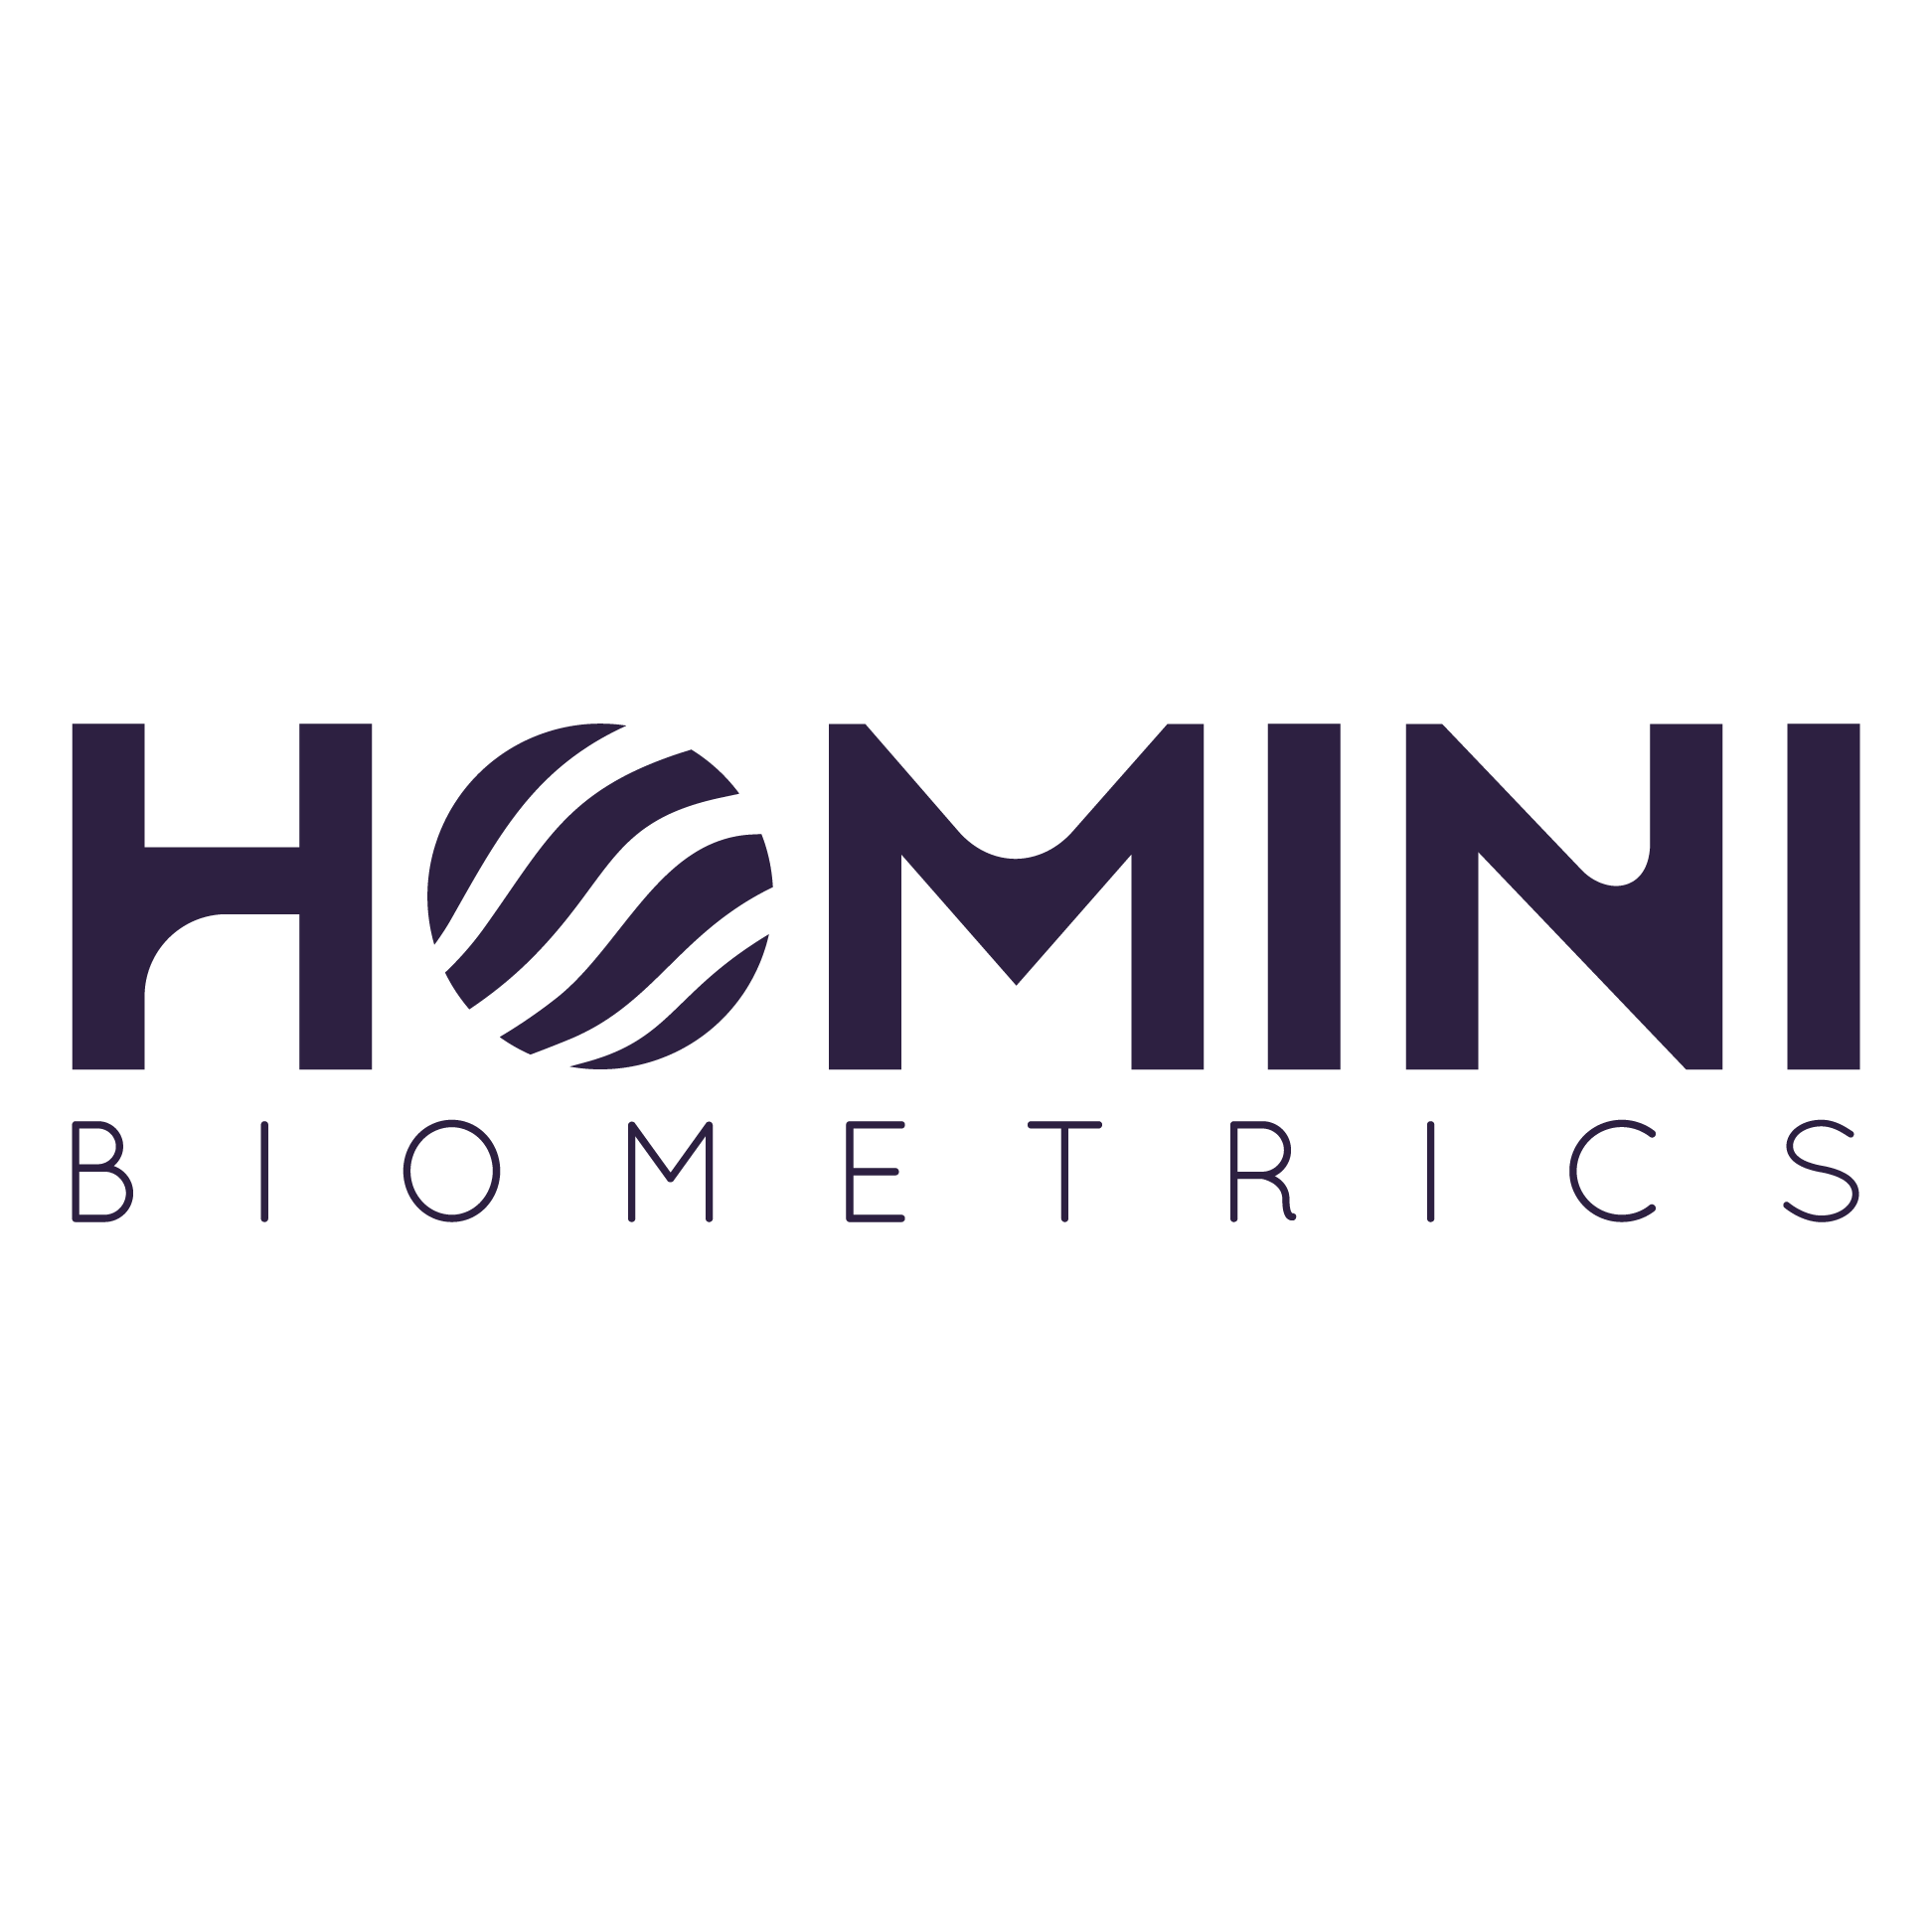 Logotipo-Homini-01-002